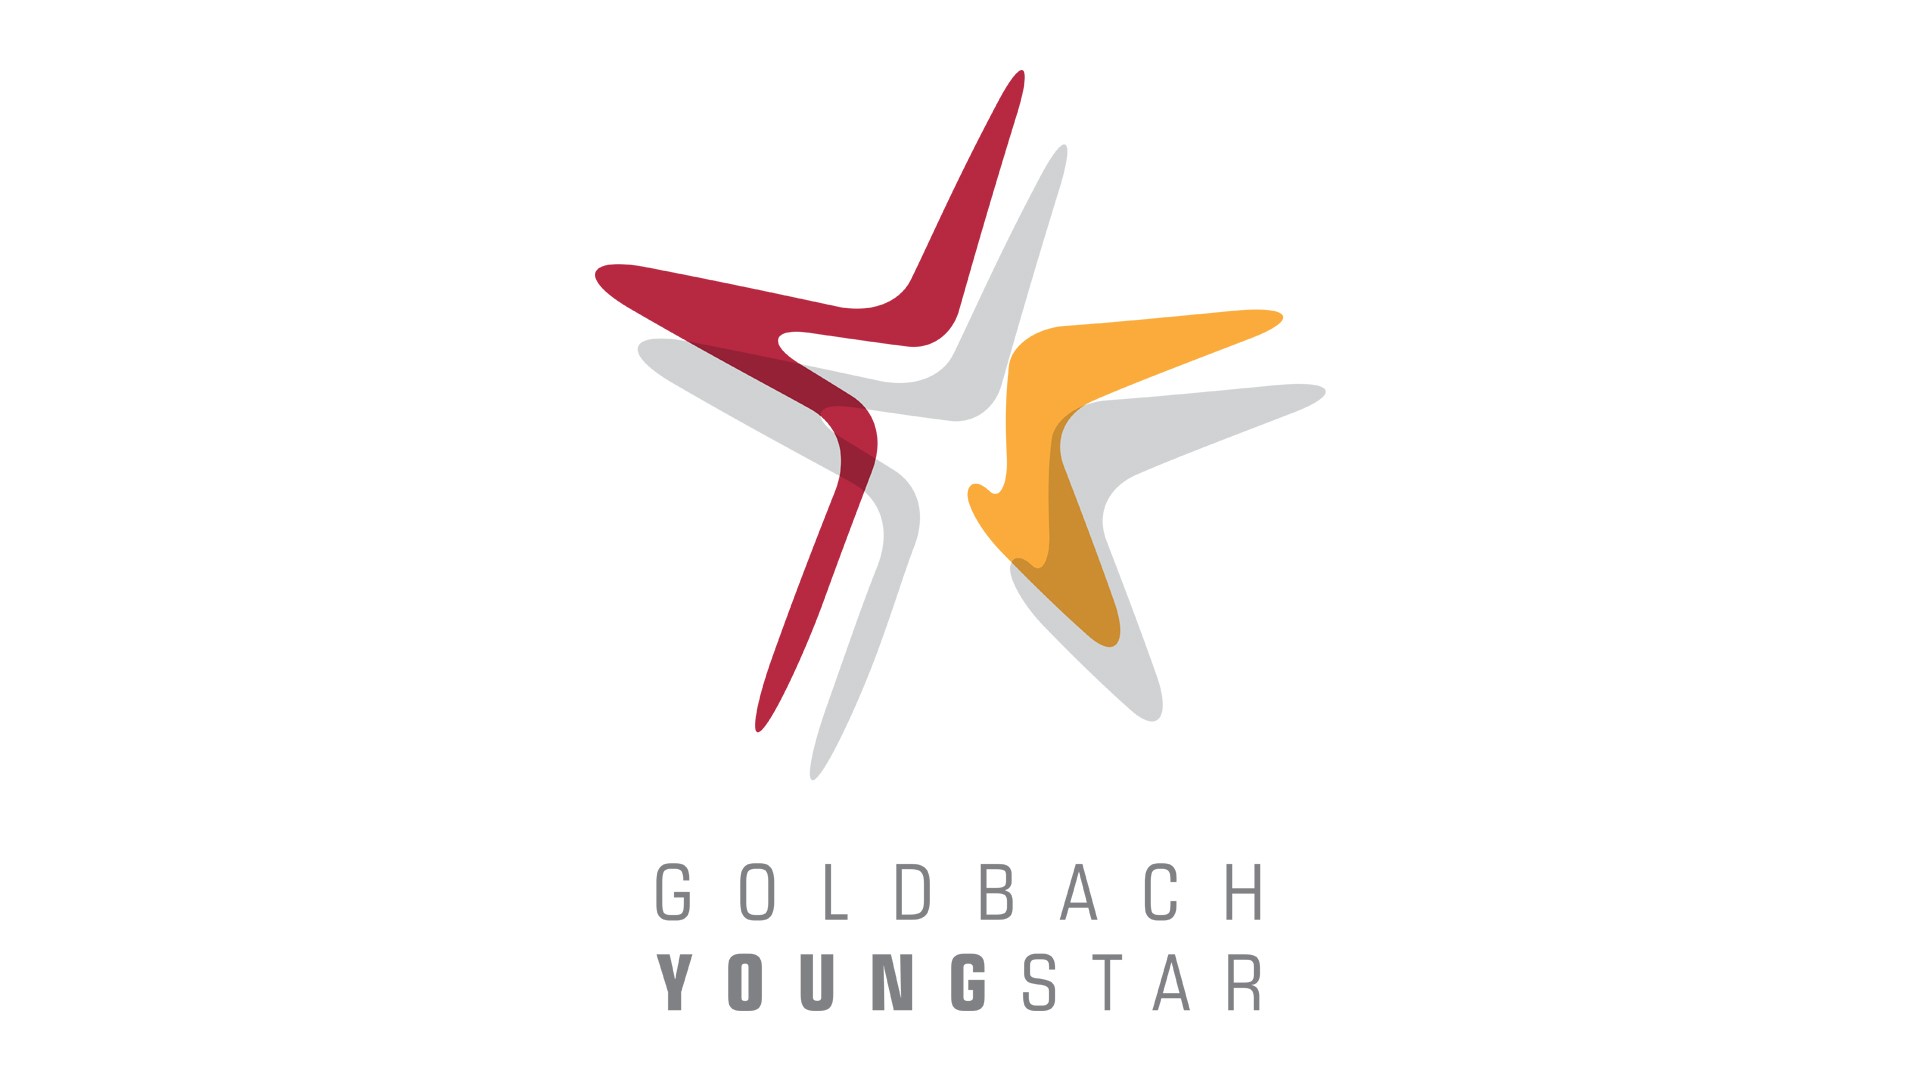 goldbach-at-youngstar-logo-weisser-hintergrund-1920x1080.jpg